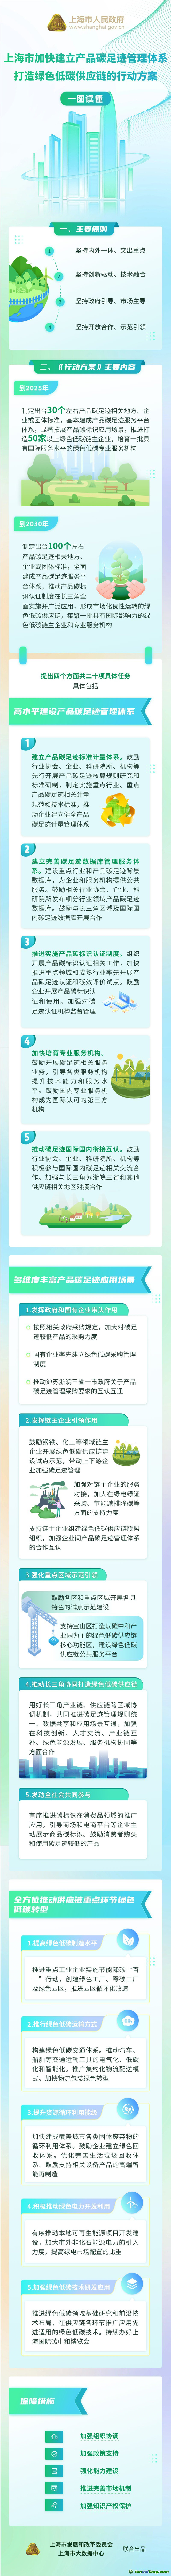 一图读懂《上海市加快建立产品碳足迹管理体系 打造绿色低碳供应链的行动方案》.jpg